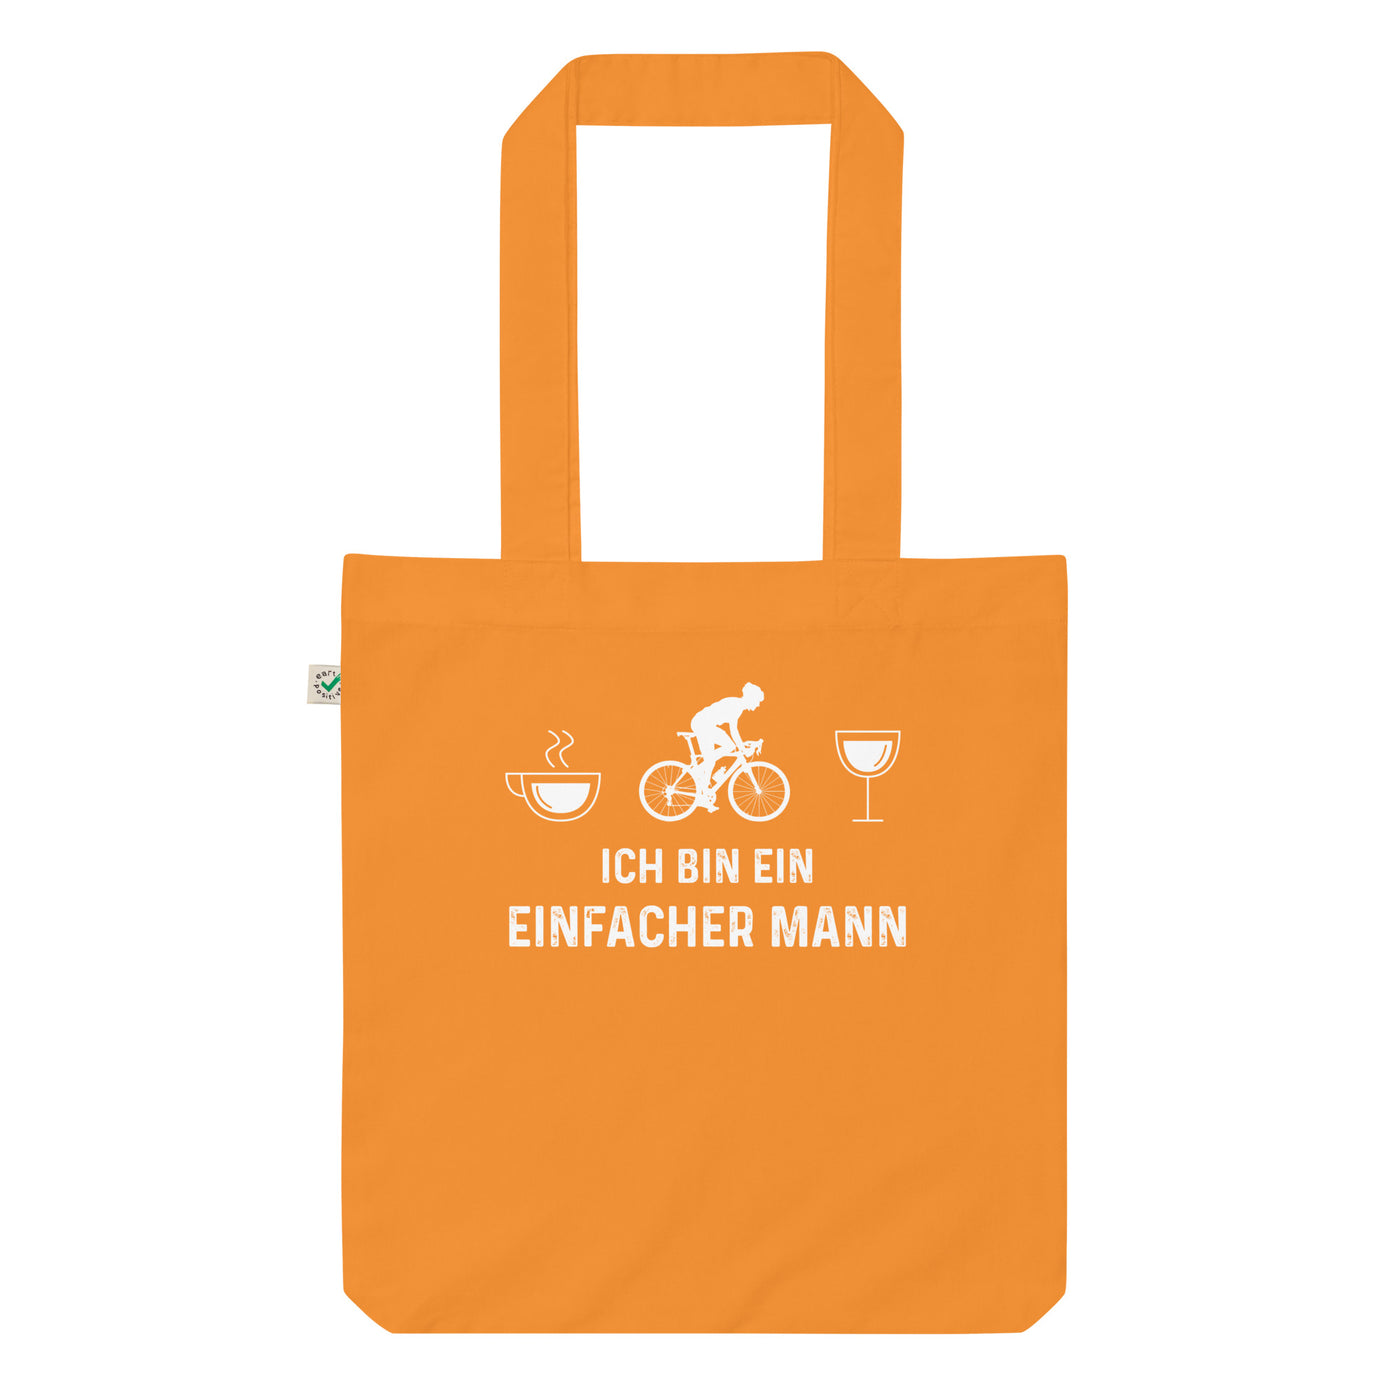 Ich Bin Ein Einfacher Mann 1 - Organic Einkaufstasche fahrrad